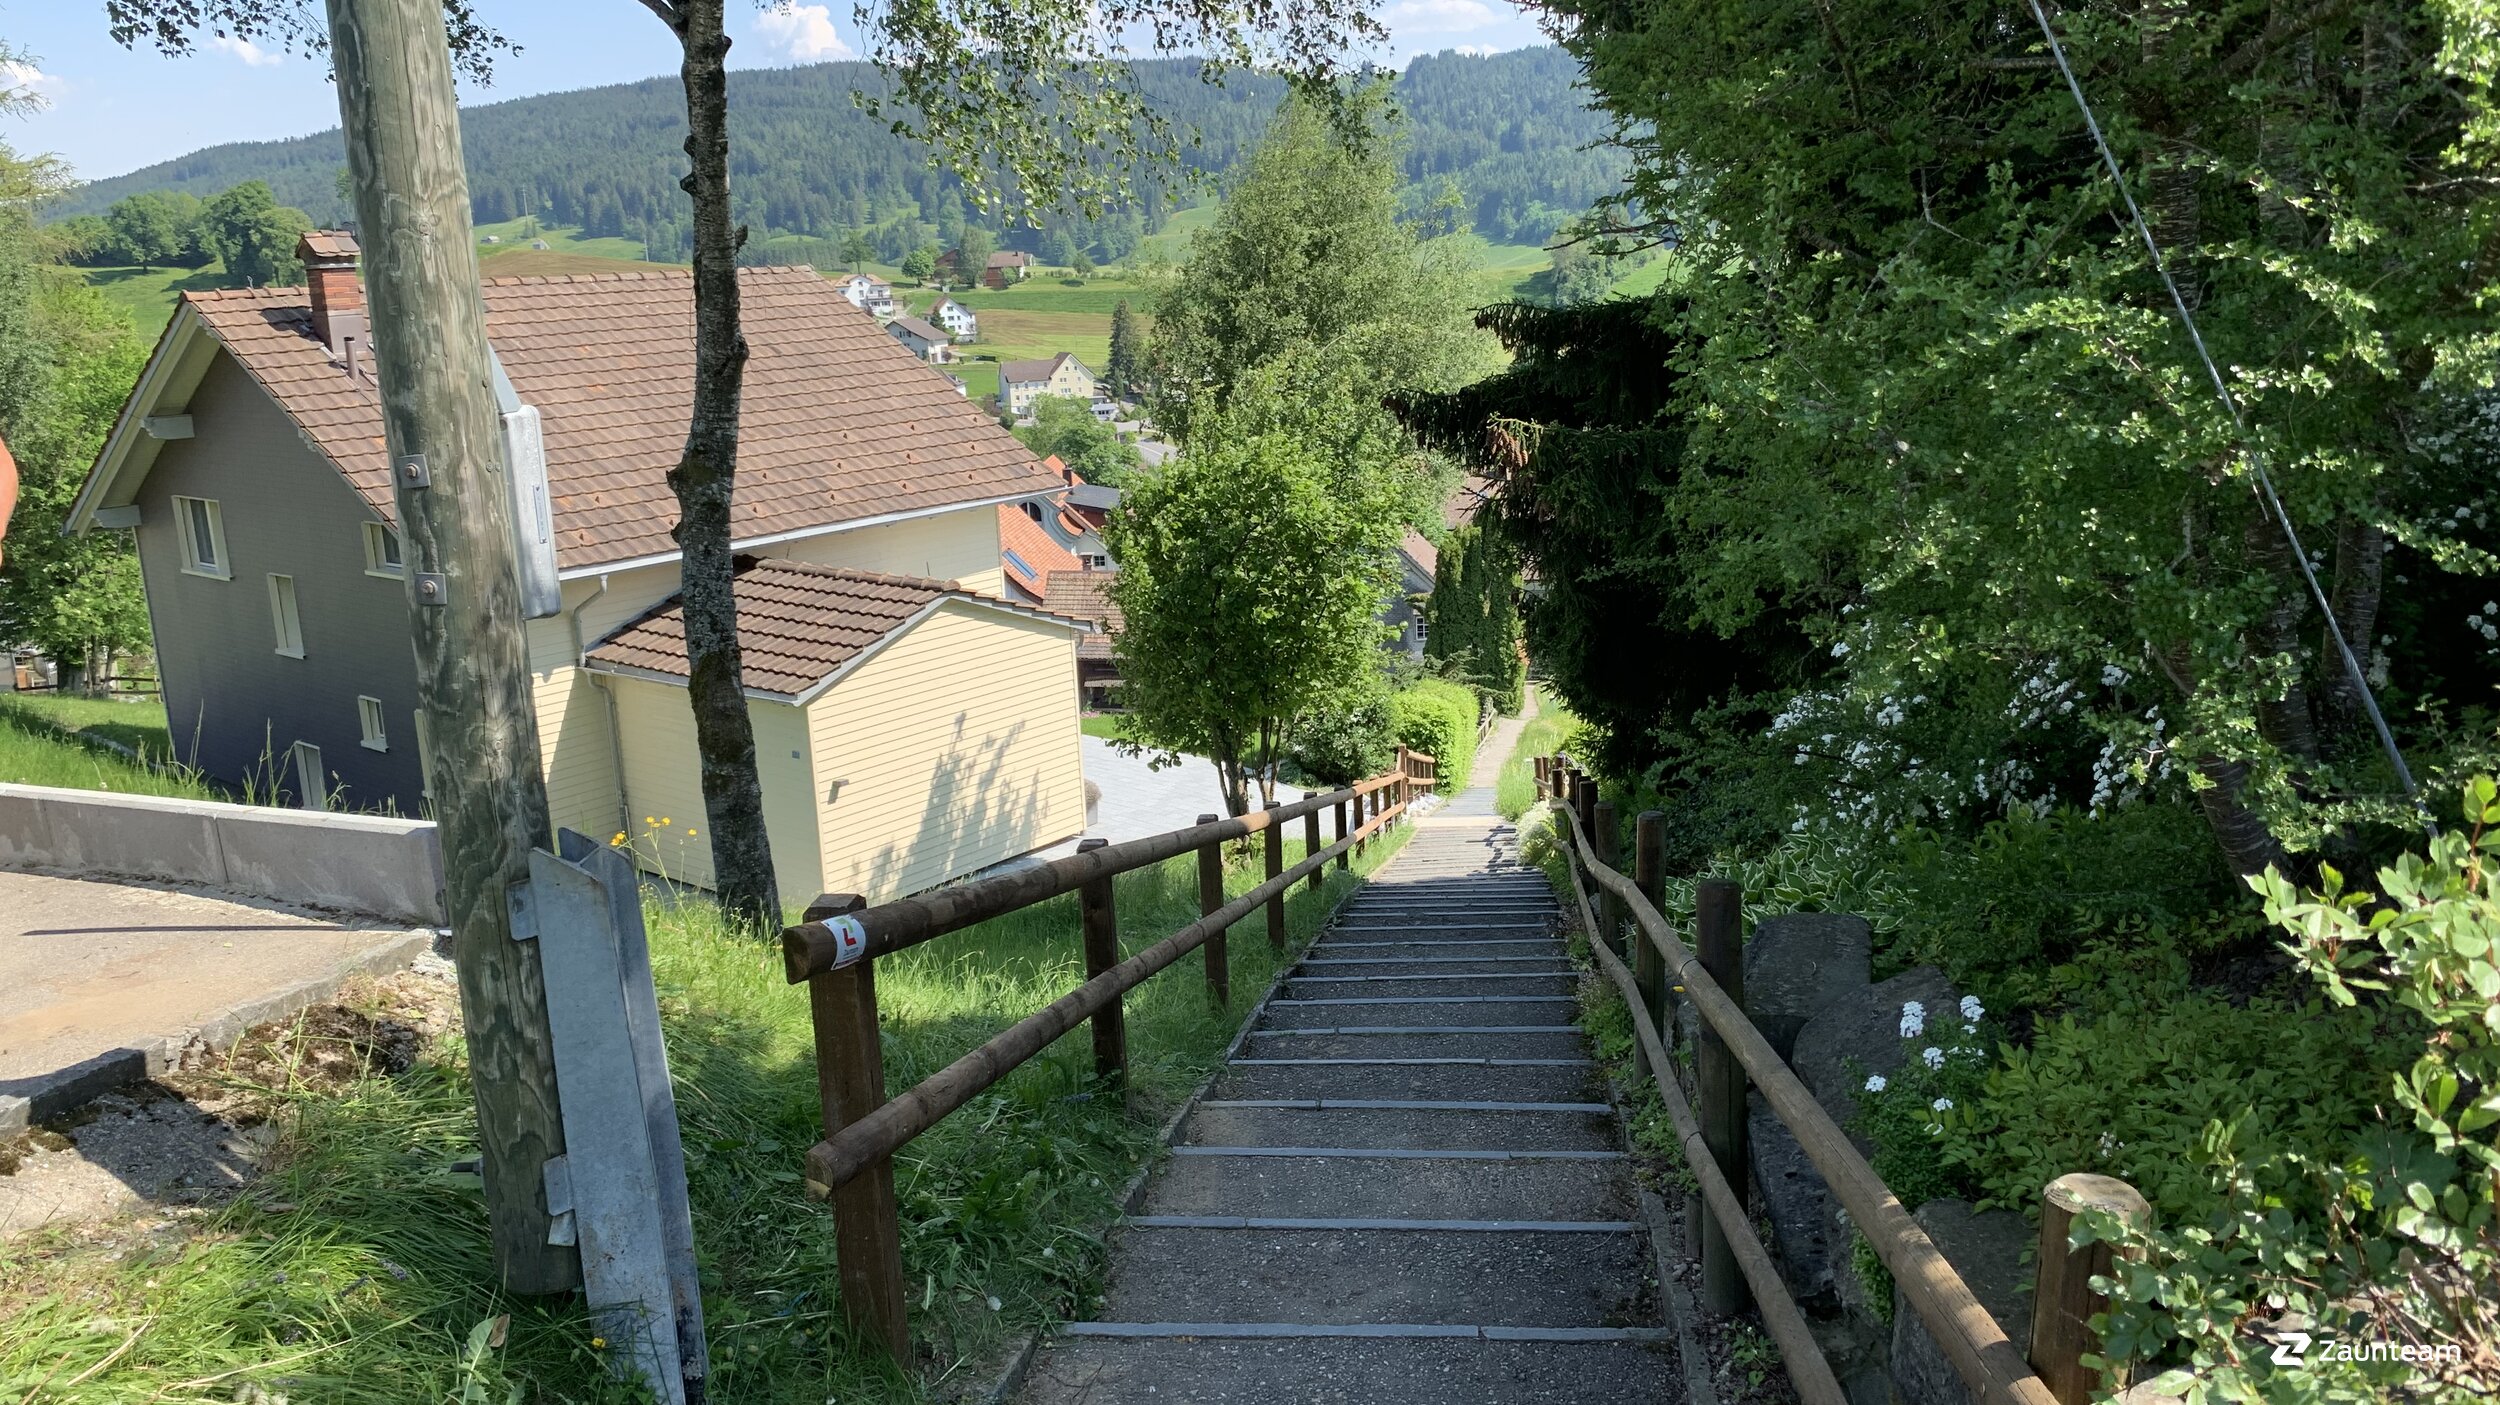 Clôture en lattes demi-rondes de 2019 à 9056 Gais Suisse de Zaunteam Appenzellerland.